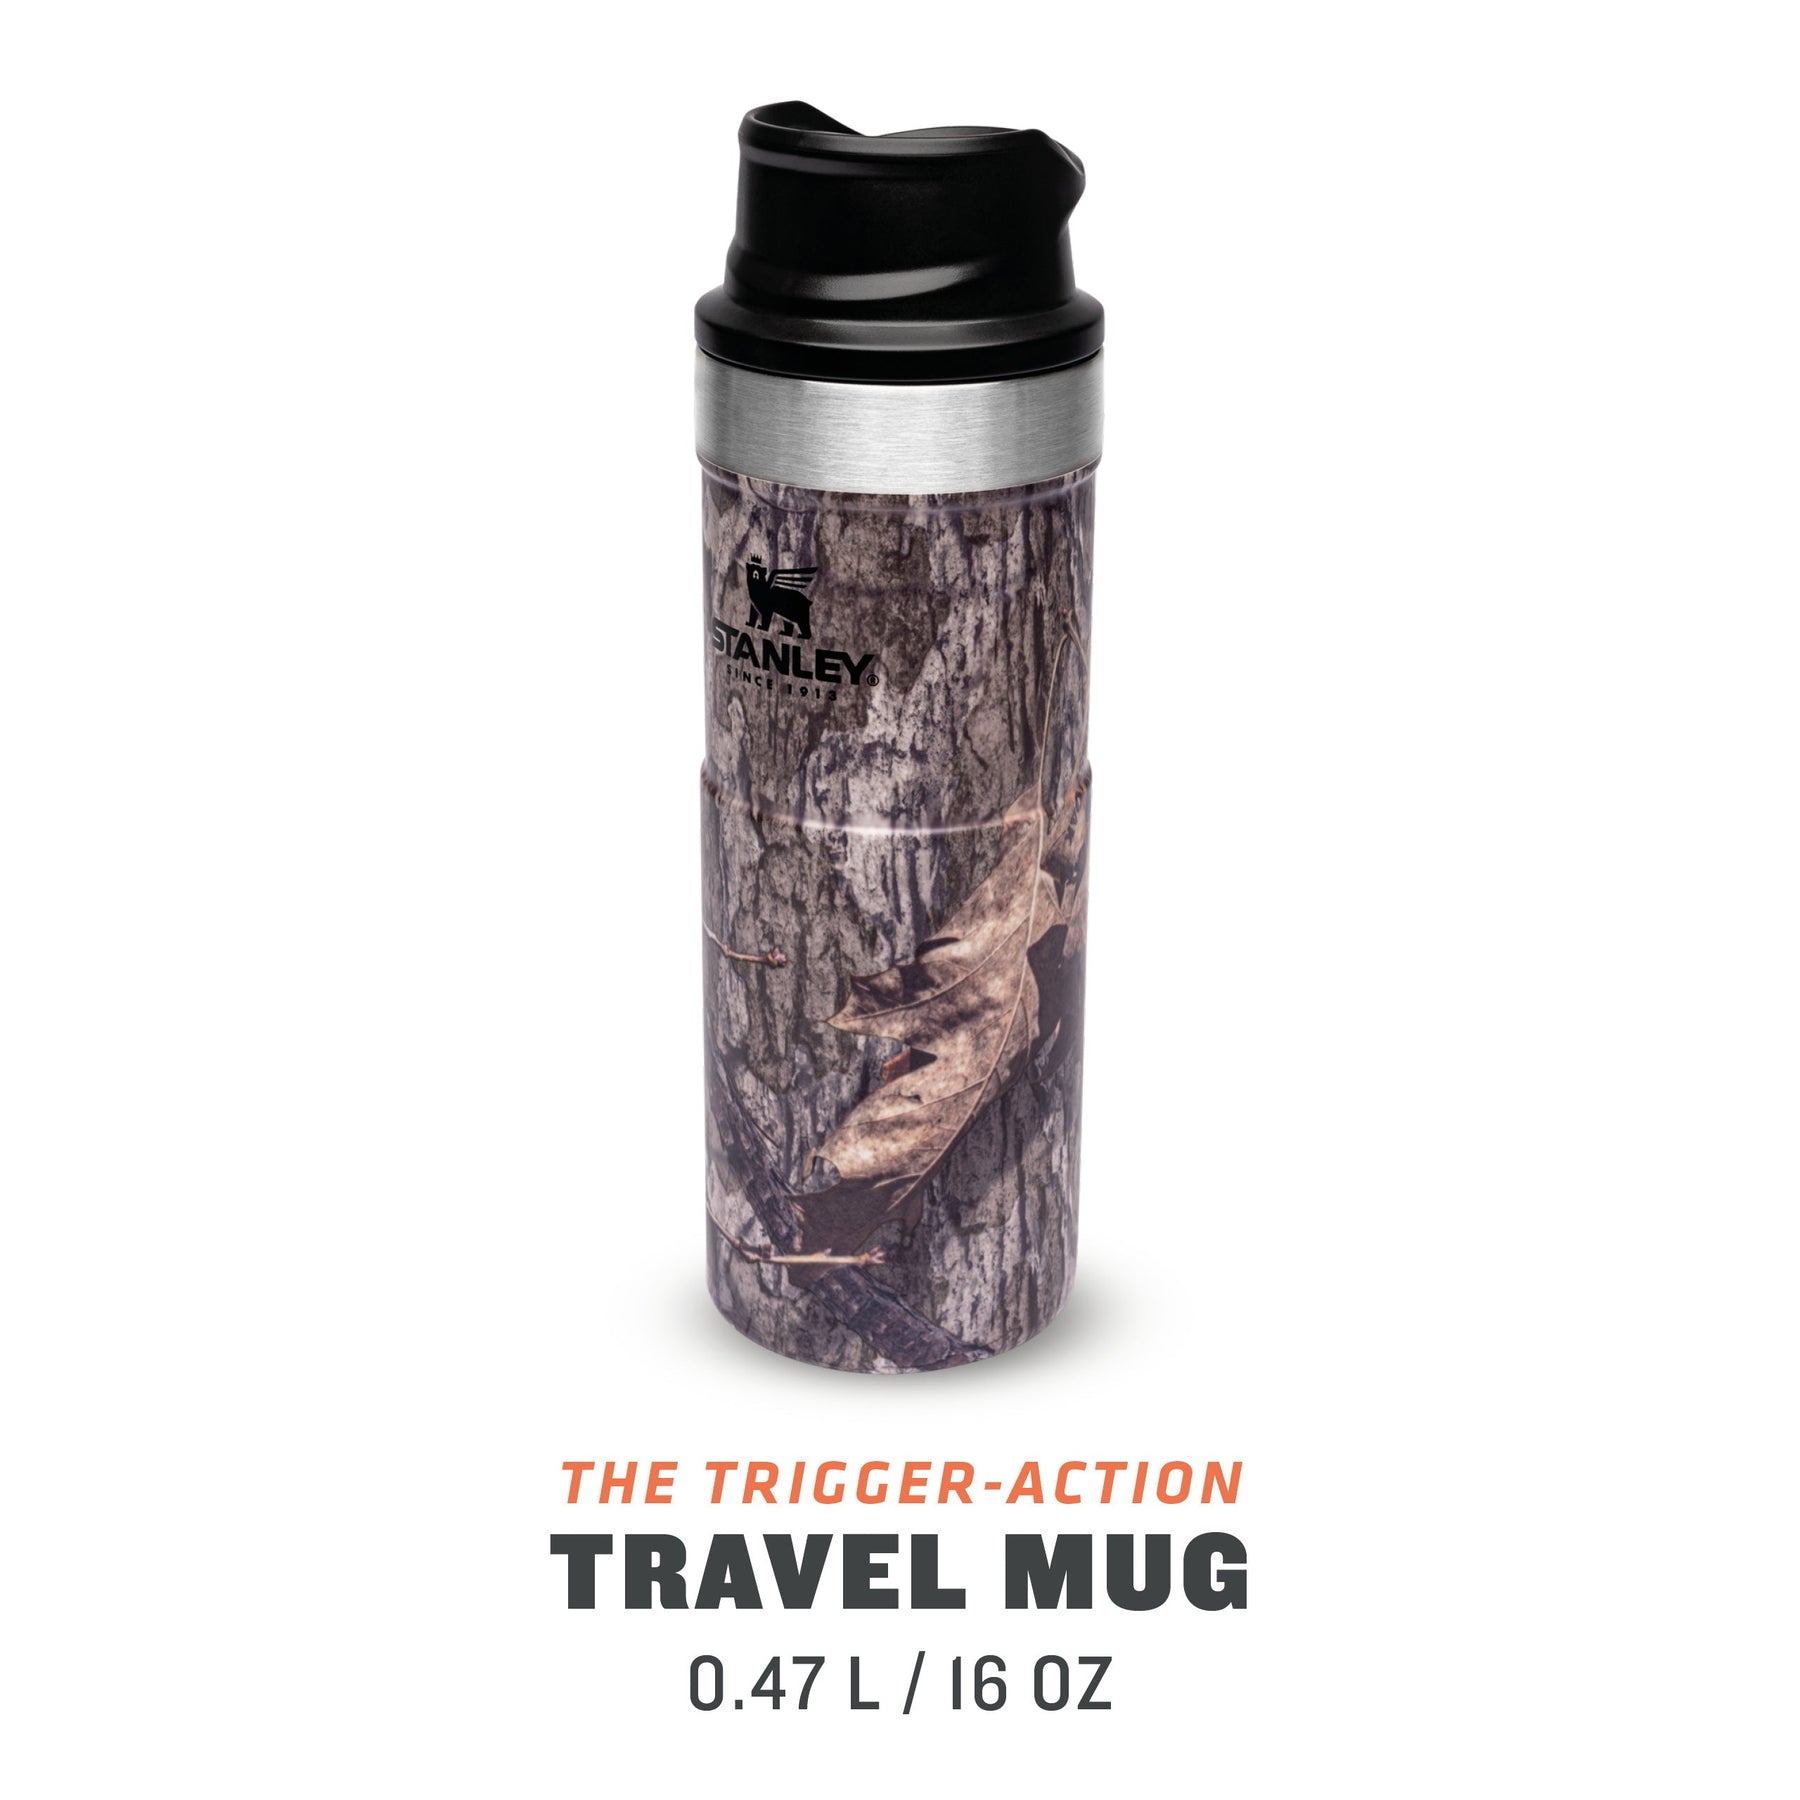 Classic Trigger Action Travel Mug, 0.47L, Mossy Oak